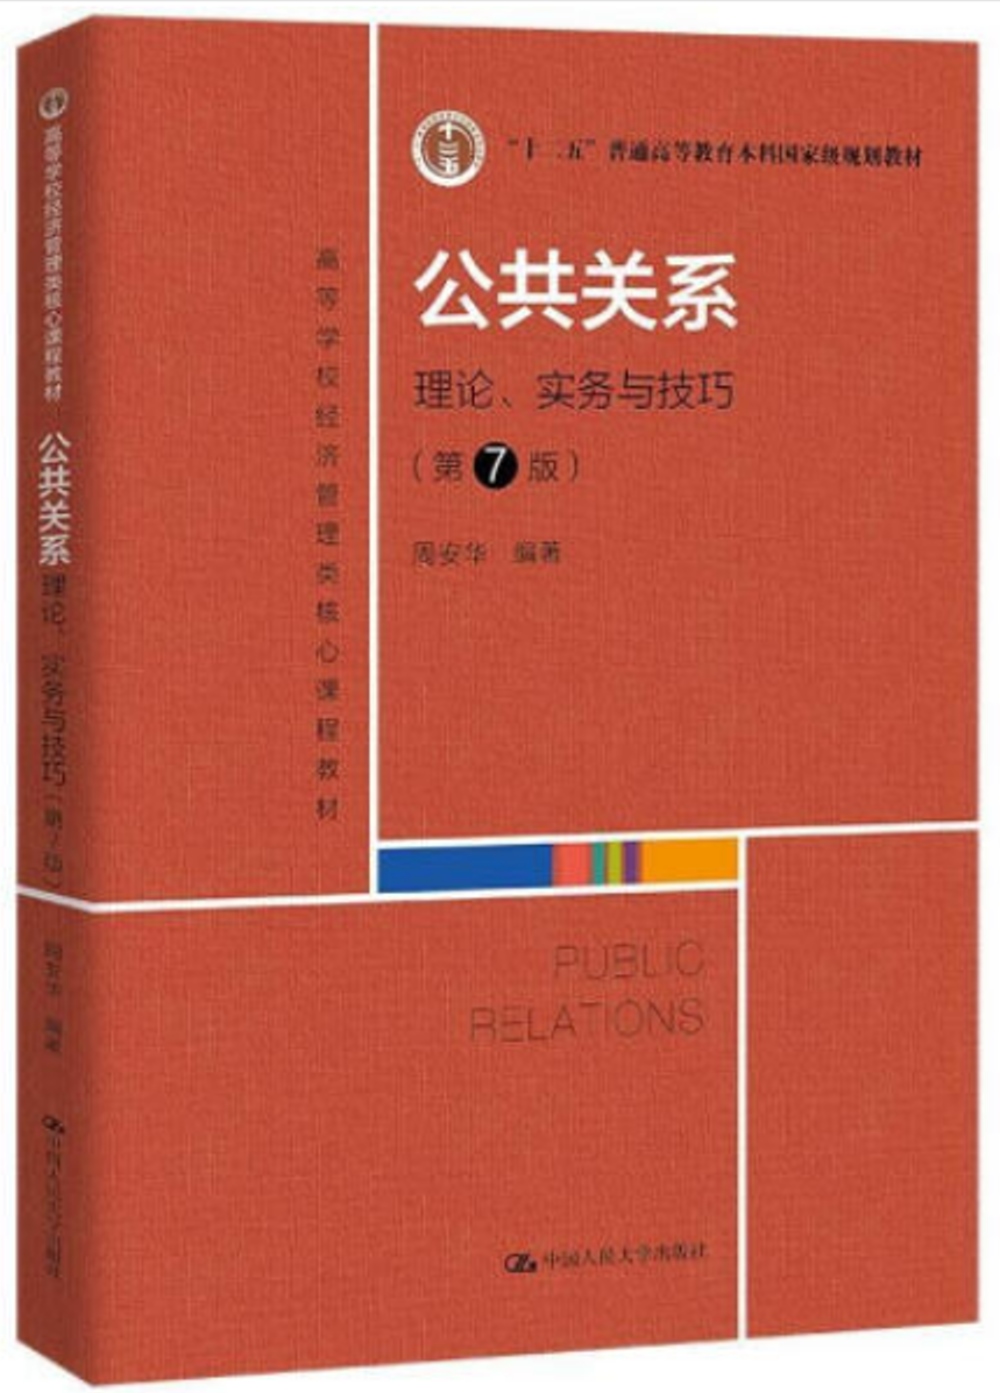 公共關係:理論、實務與技巧(第7版)